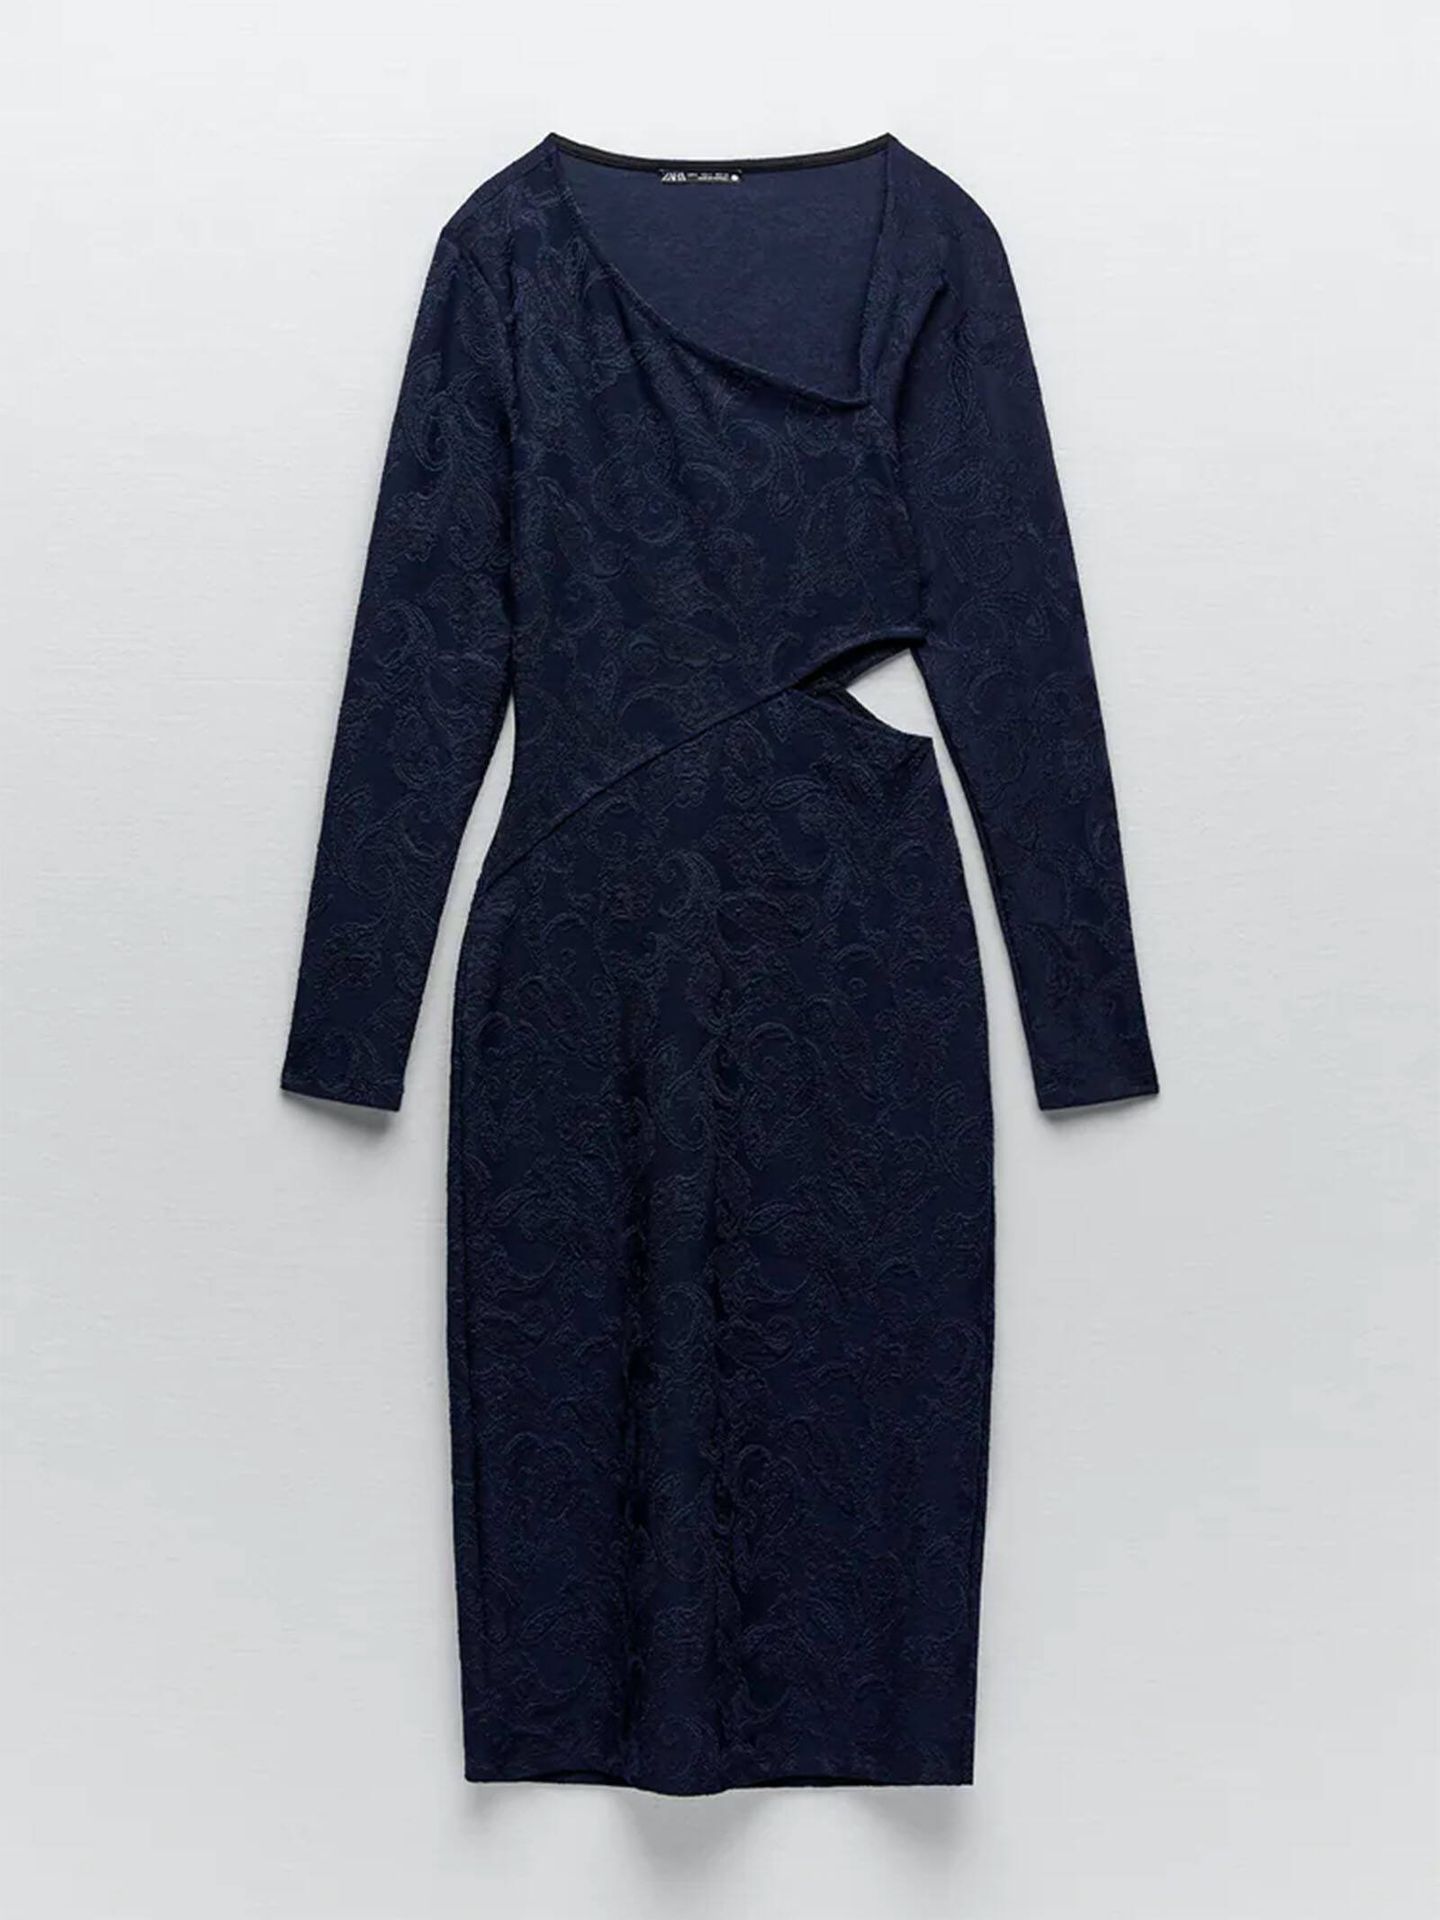 Vestido de Zara con efecto 'tipazo' que luce Rocío Osorno. (Zara/Cortesía)